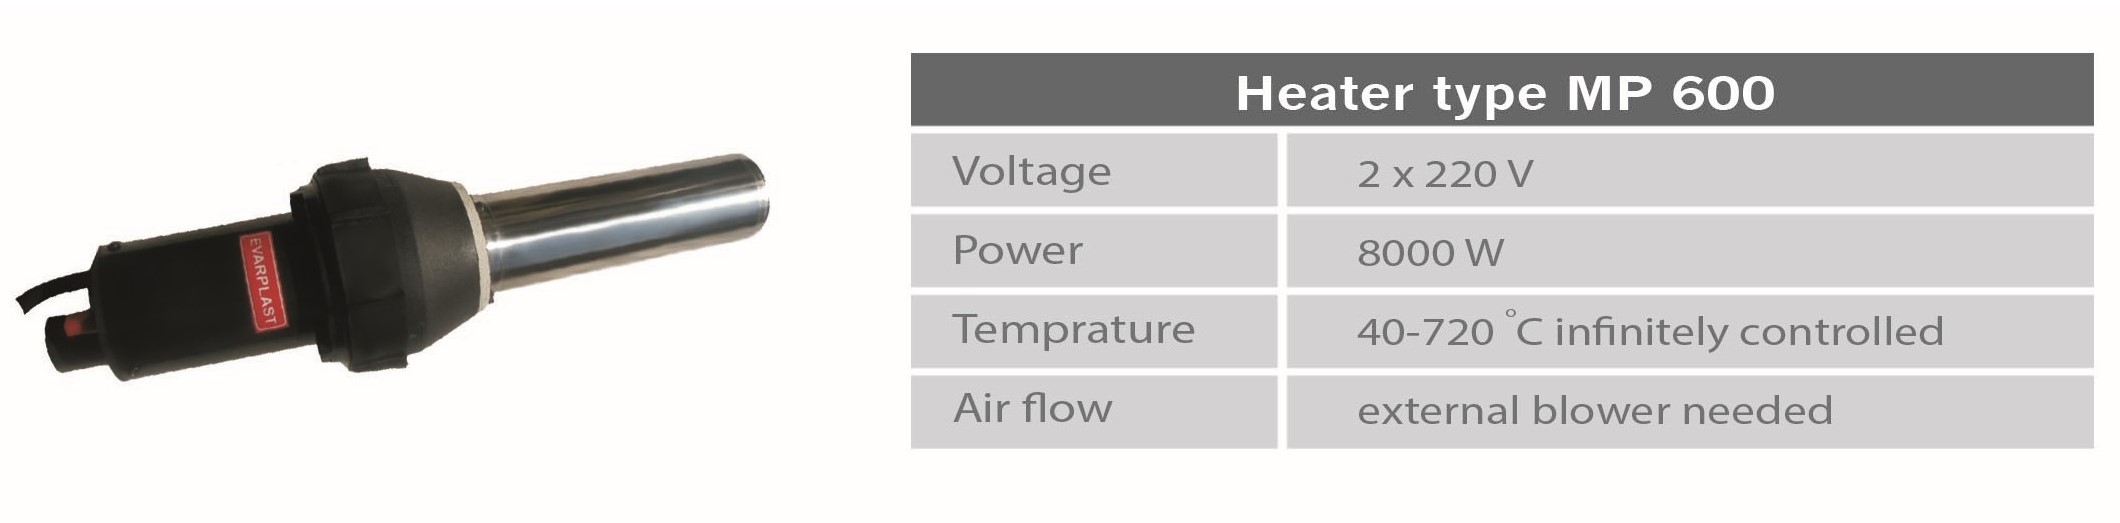 هیترهای صنعتی اوارپلاست (Industrial heater blowers) با قابلیت کنترل الکترونیکی دما از ۴۰ تا ۷۰۰ درجه سانیتگراد